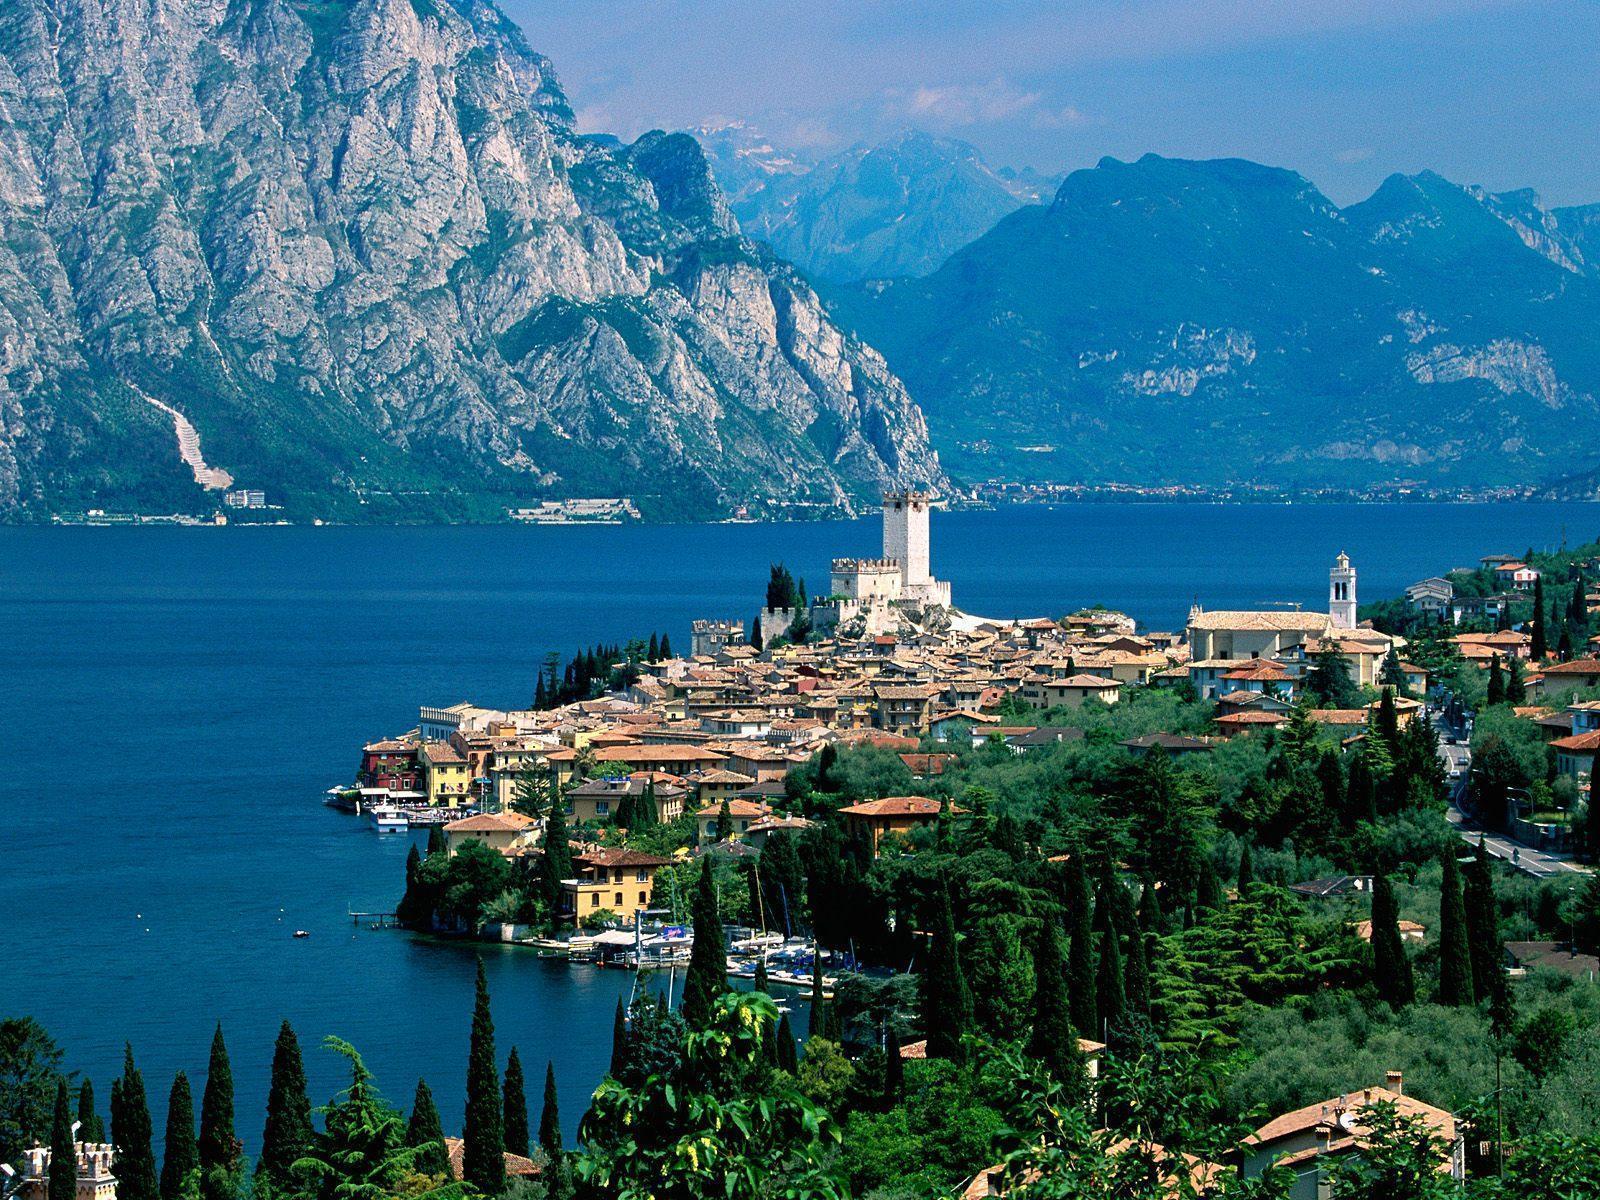 Lake Garda Italy free desktop background wallpaper image